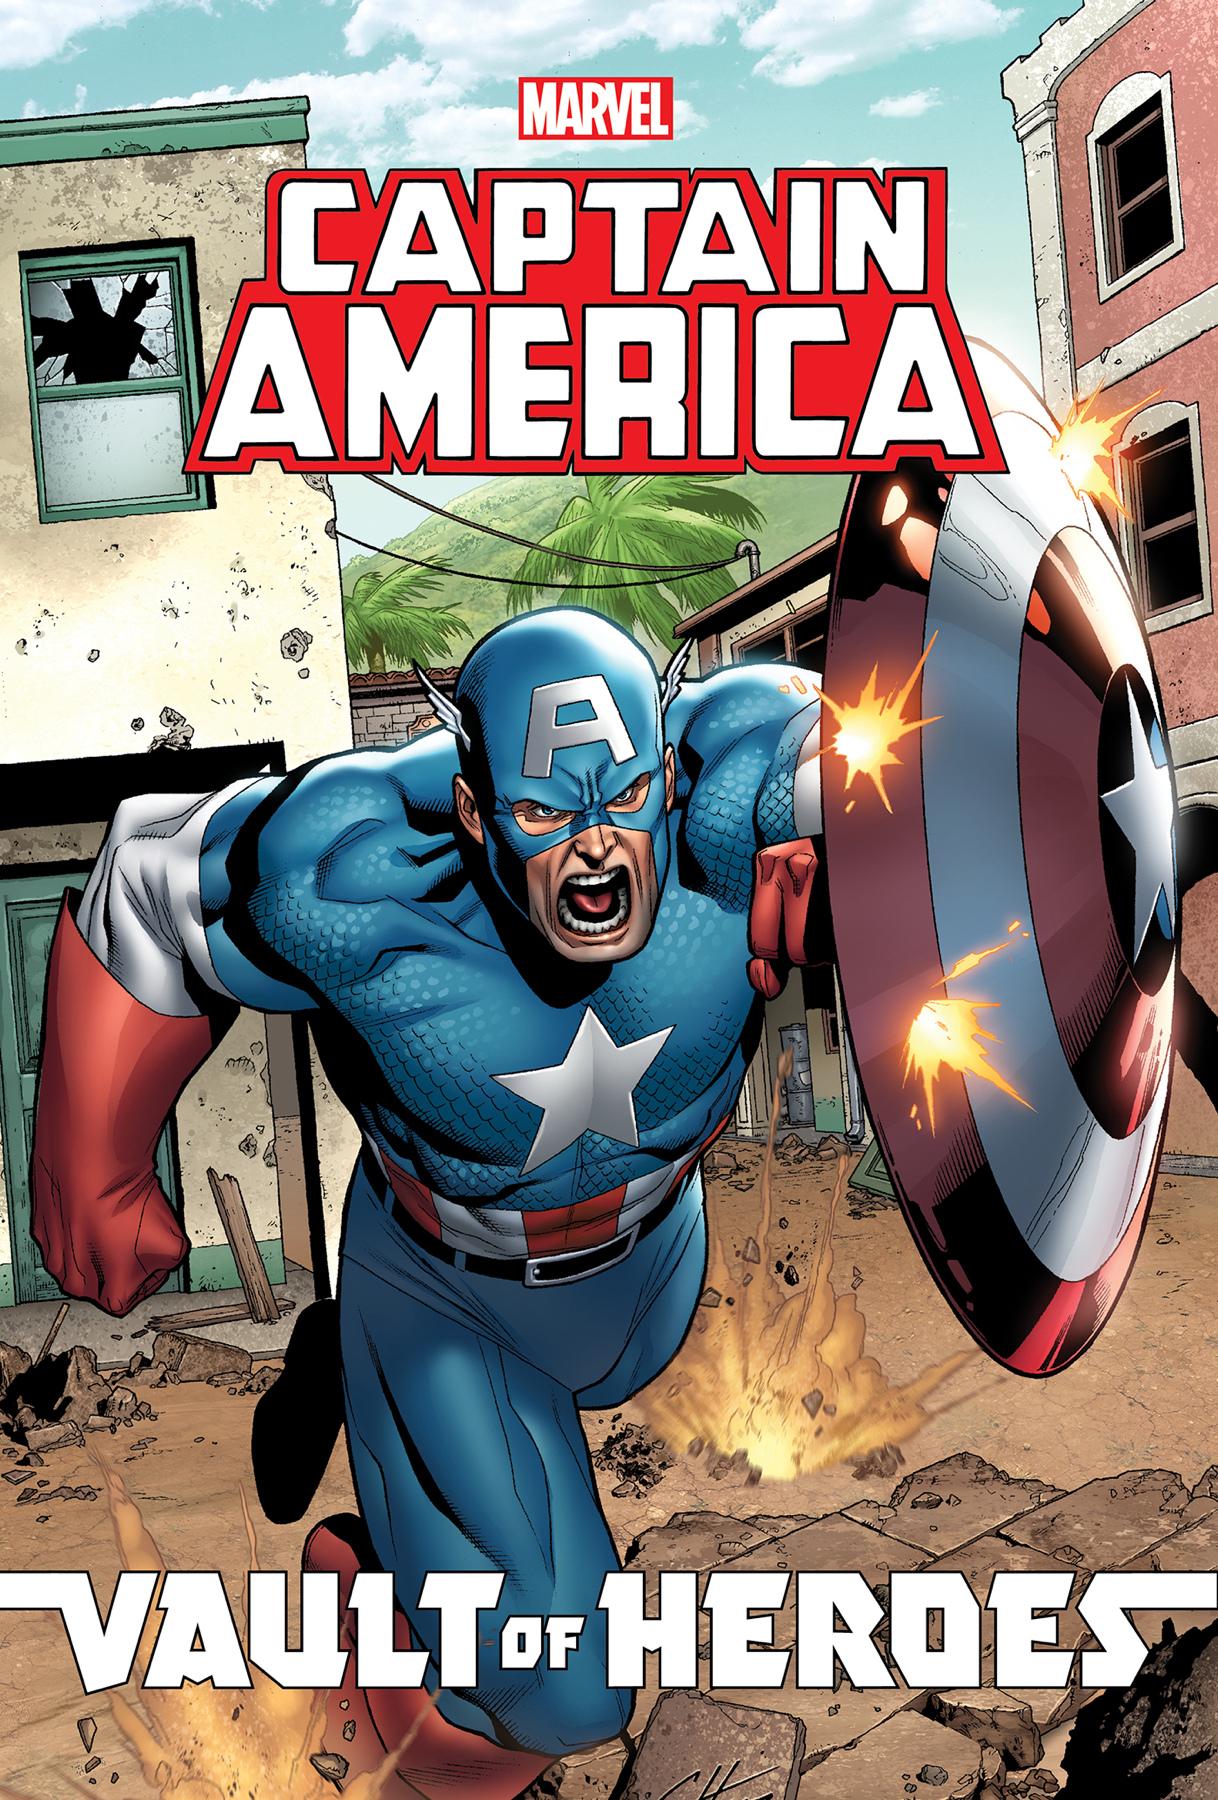 Captain America - Super Soldier, Marvel Comics, Avenger